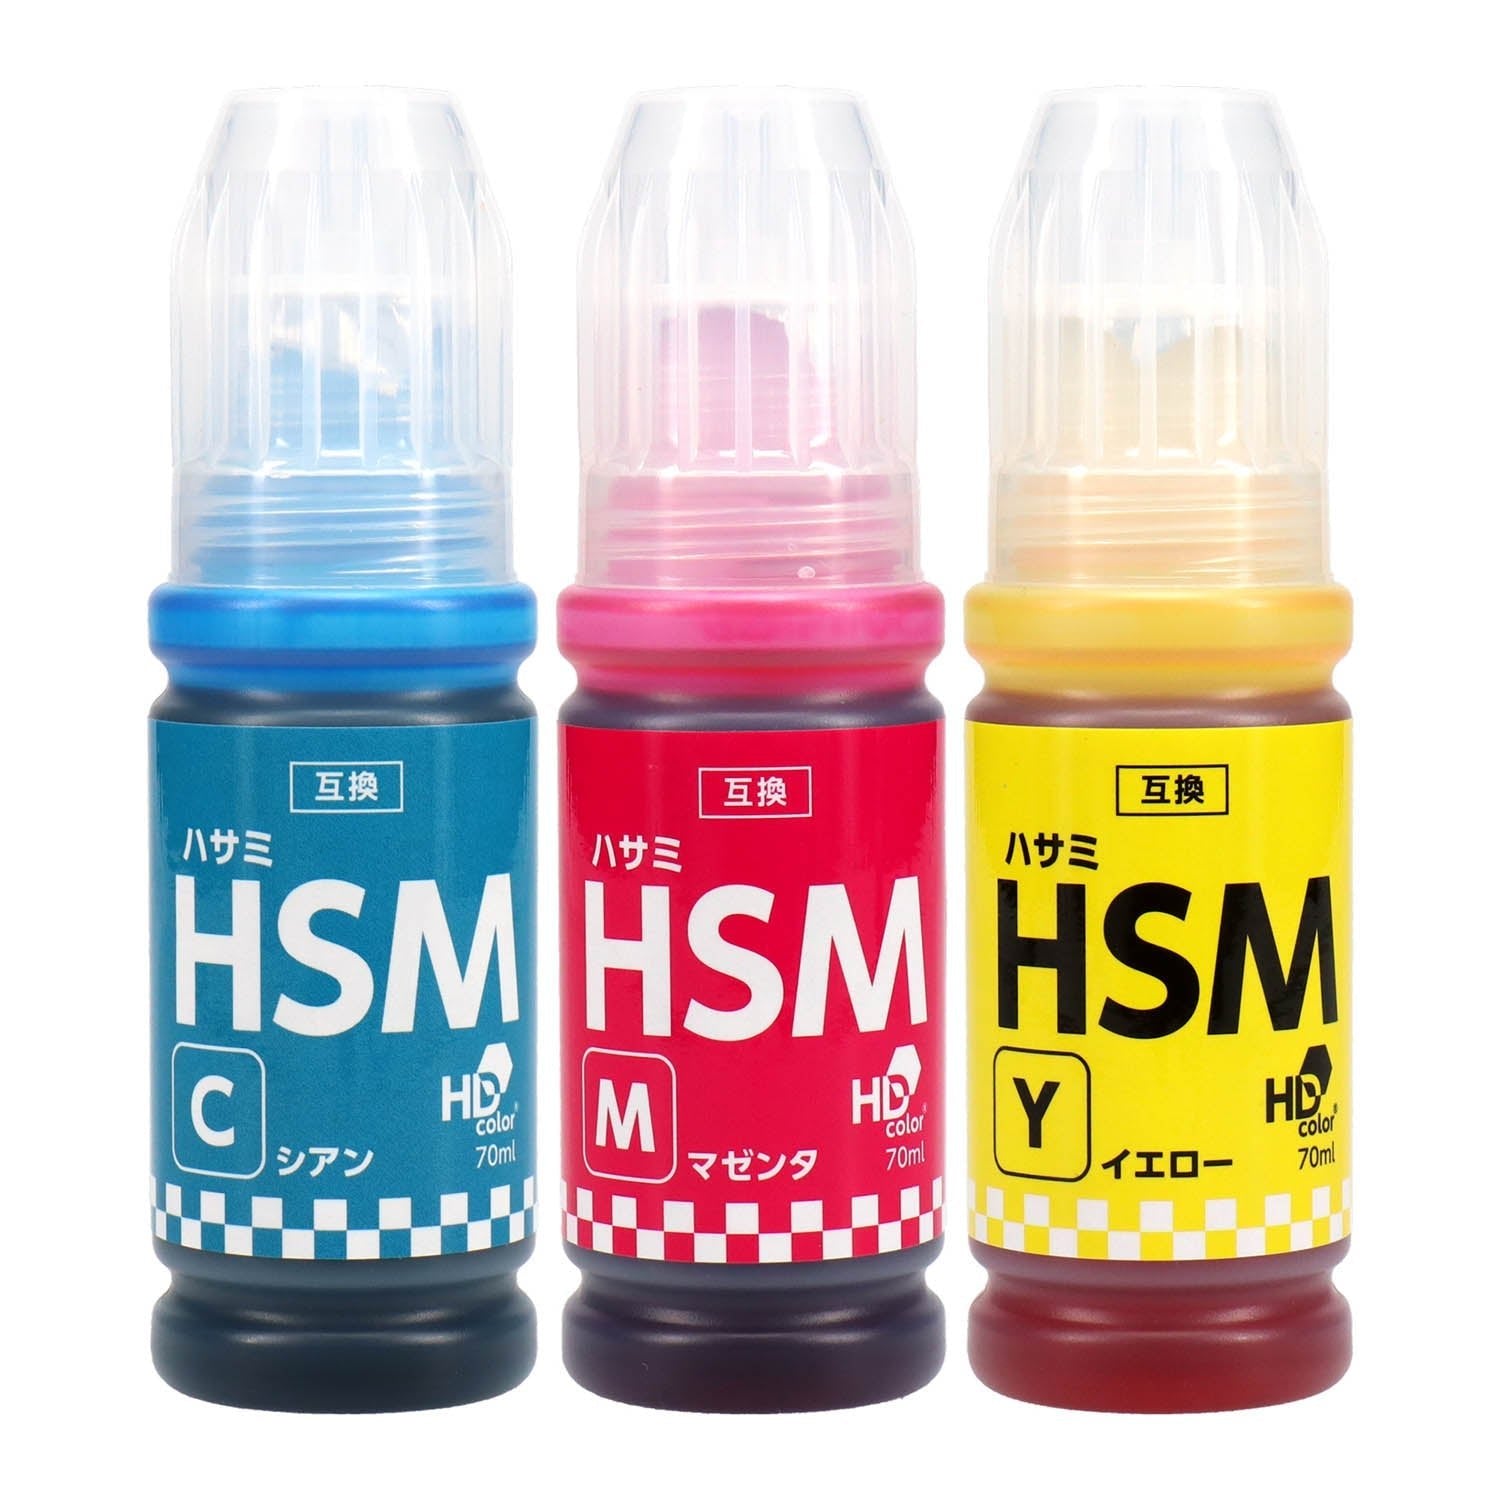 エプソン用 HSM (ハサミ) 互換インクボトル カラー3色